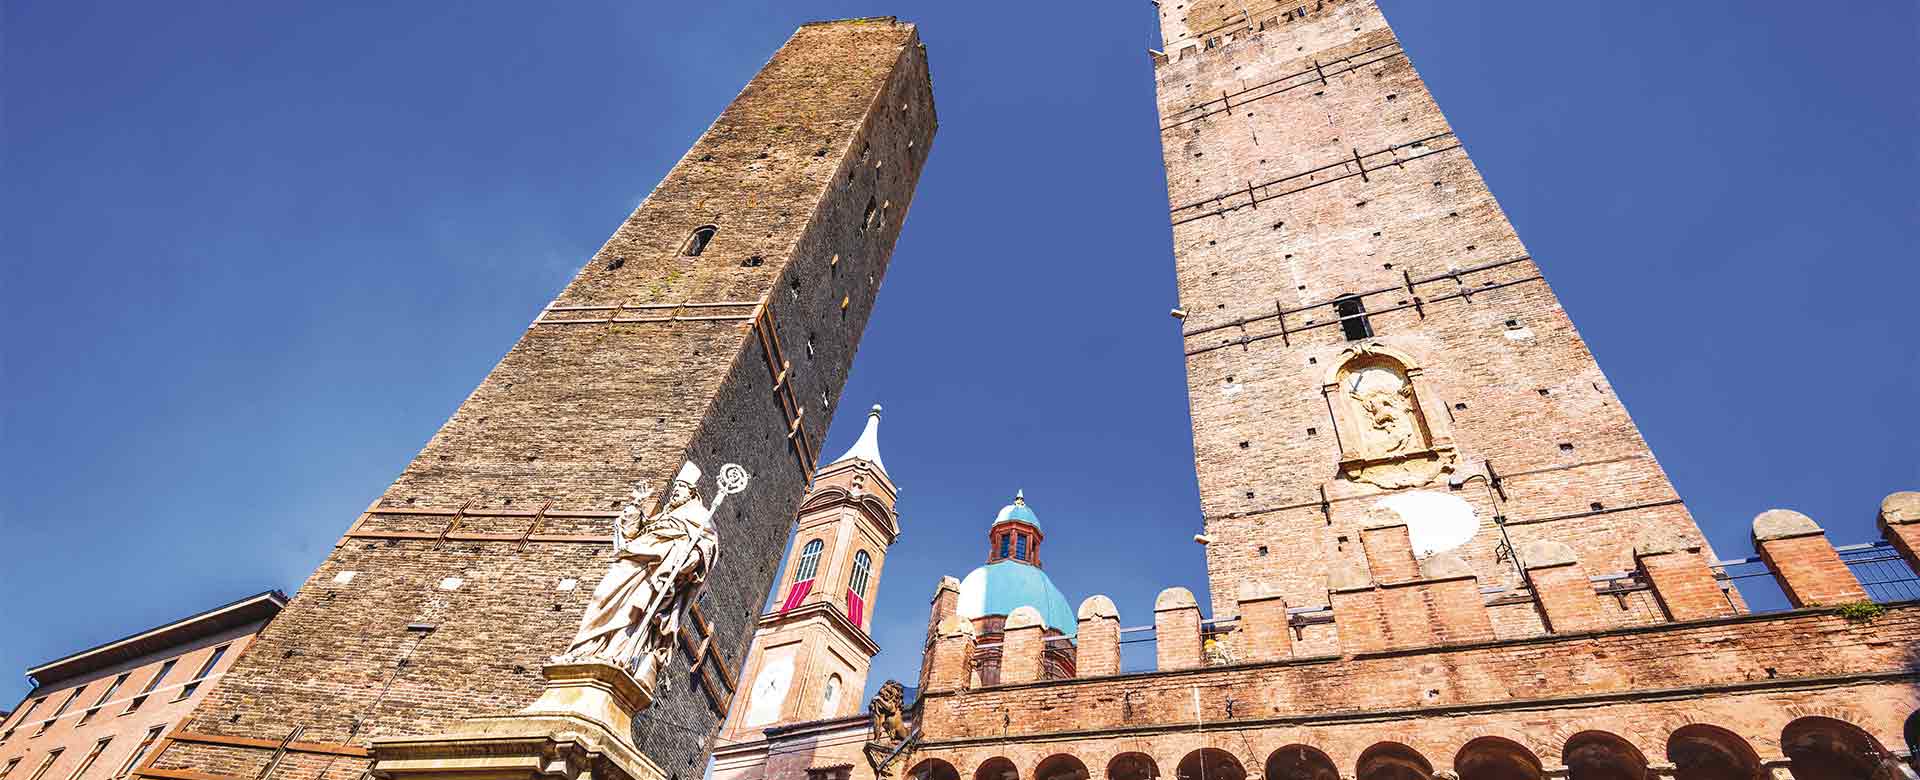 Immagine della torre degli Asinelli e quella della Garisenda, a Bologna